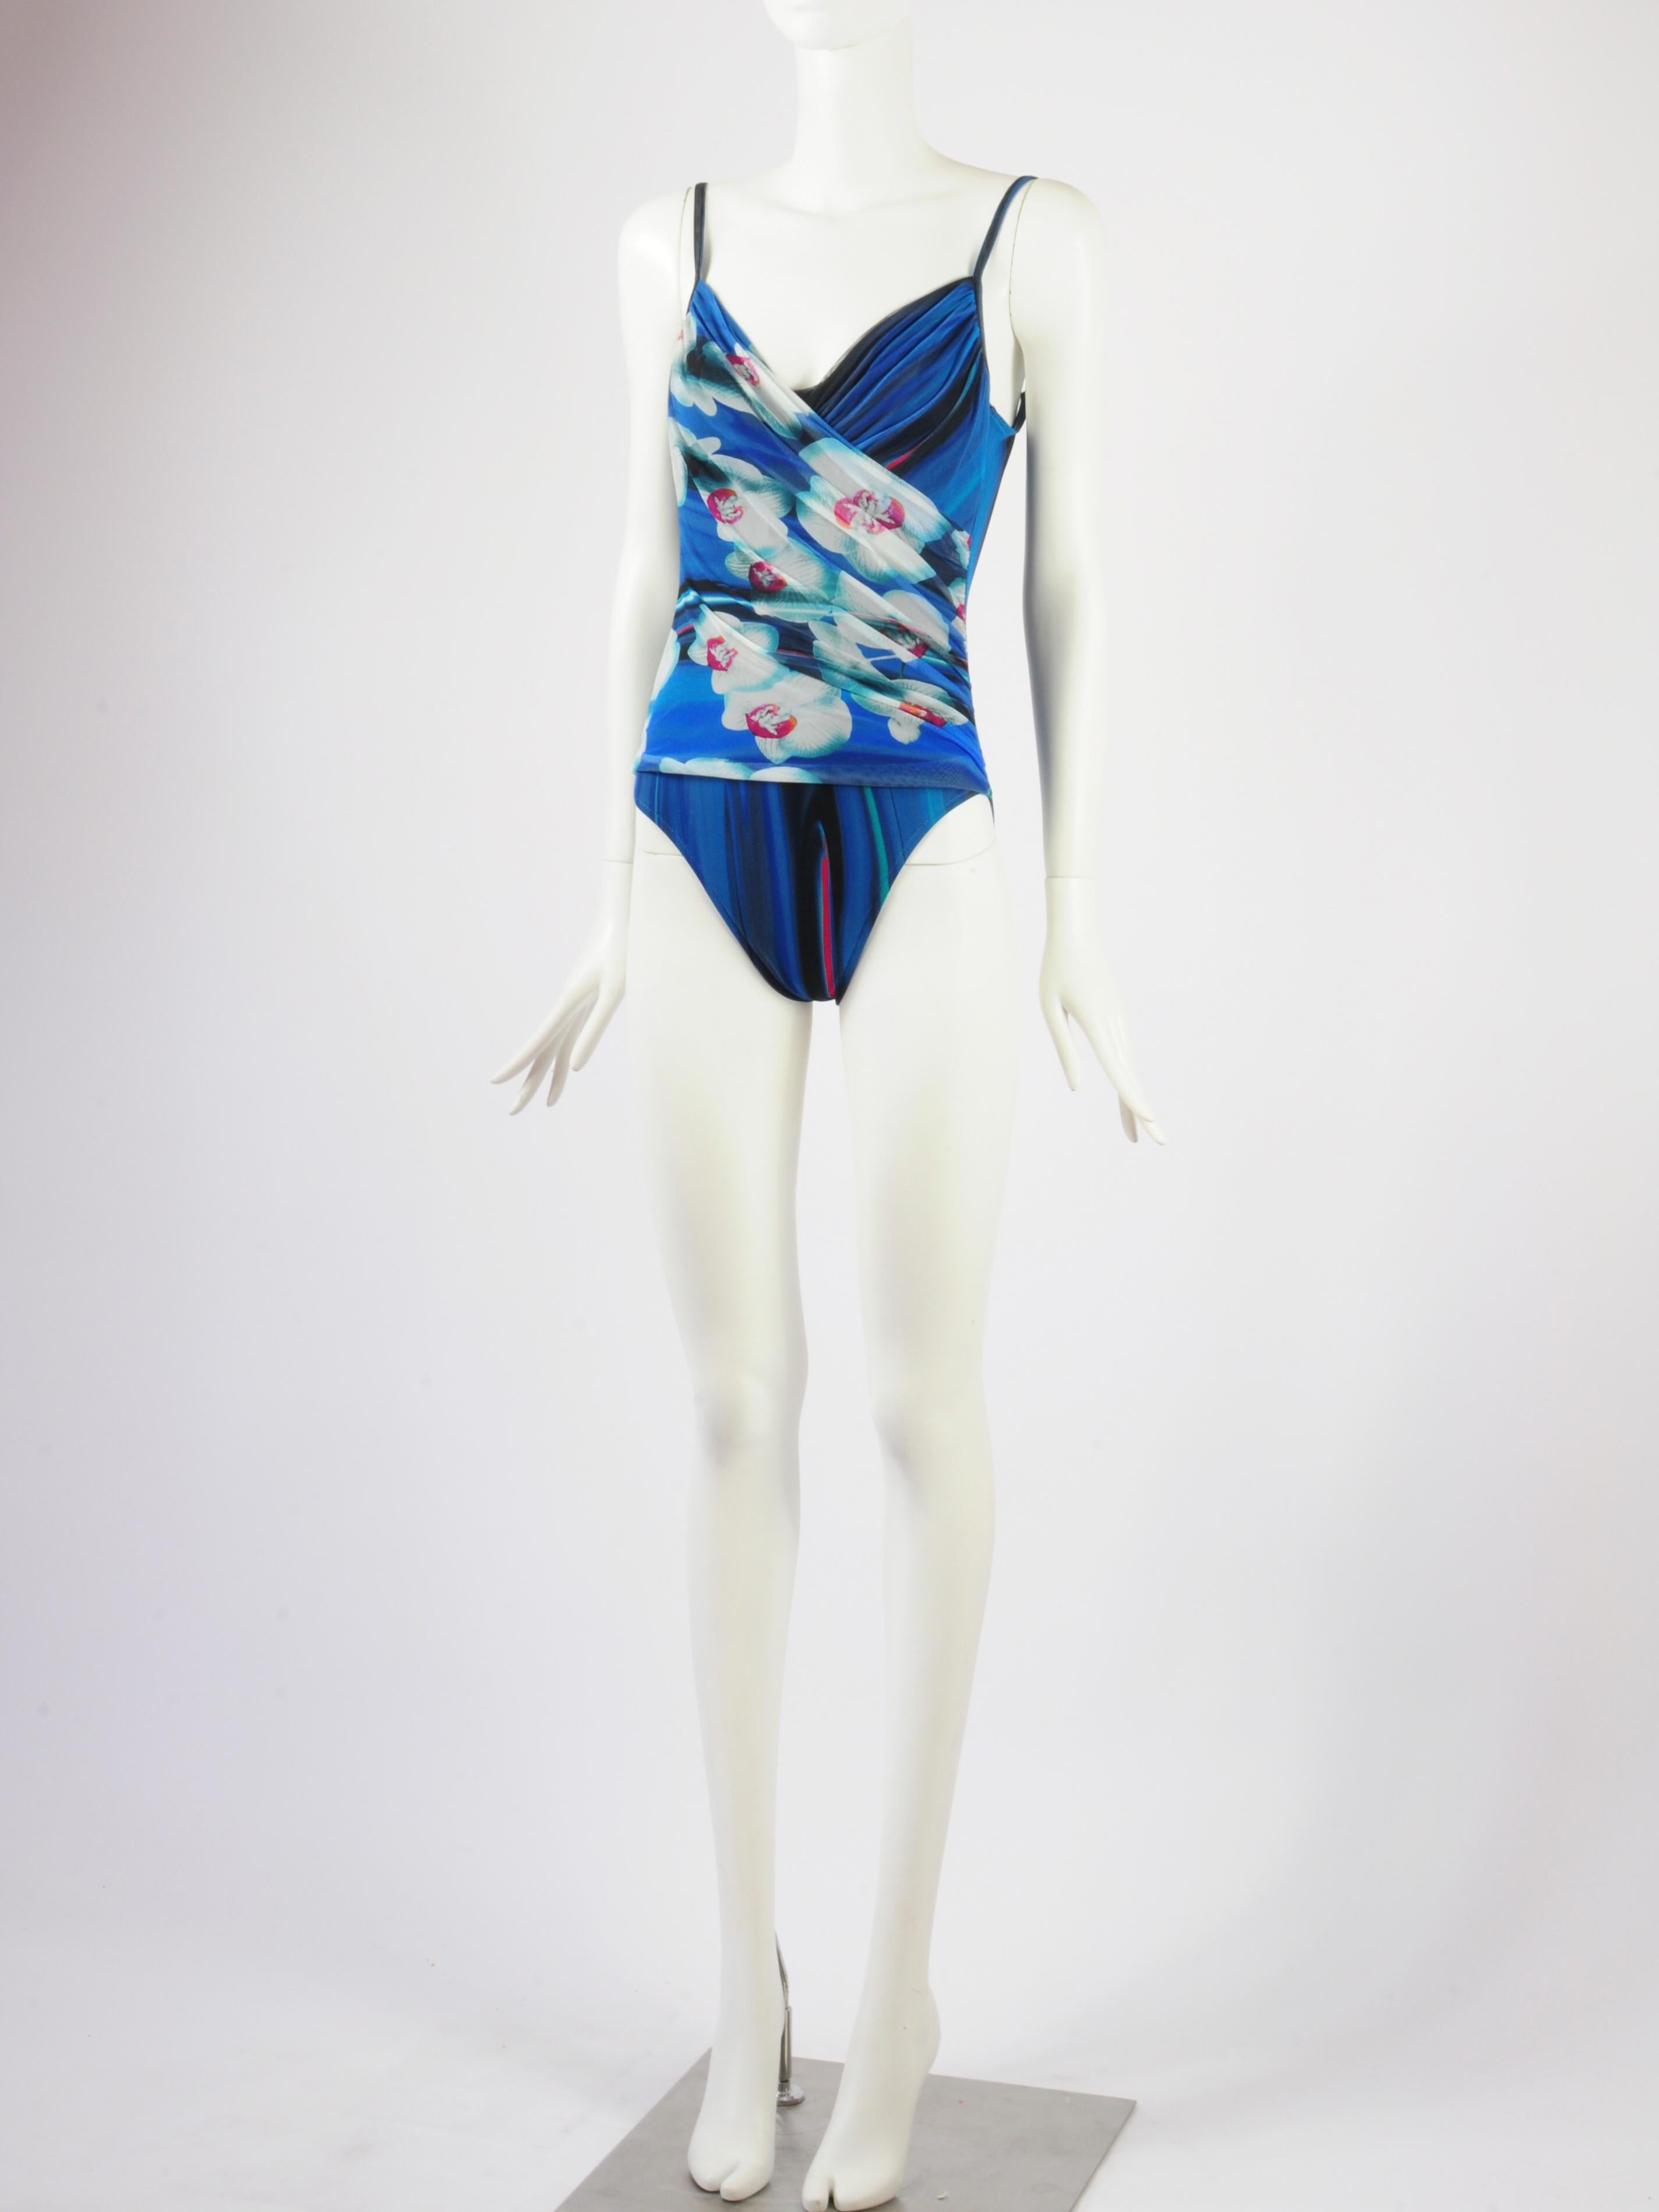 La Perla Mesh Swimsuit Bodysuit Draped Futuristic Orchid Flower Blue Print 2000s For Sale 2